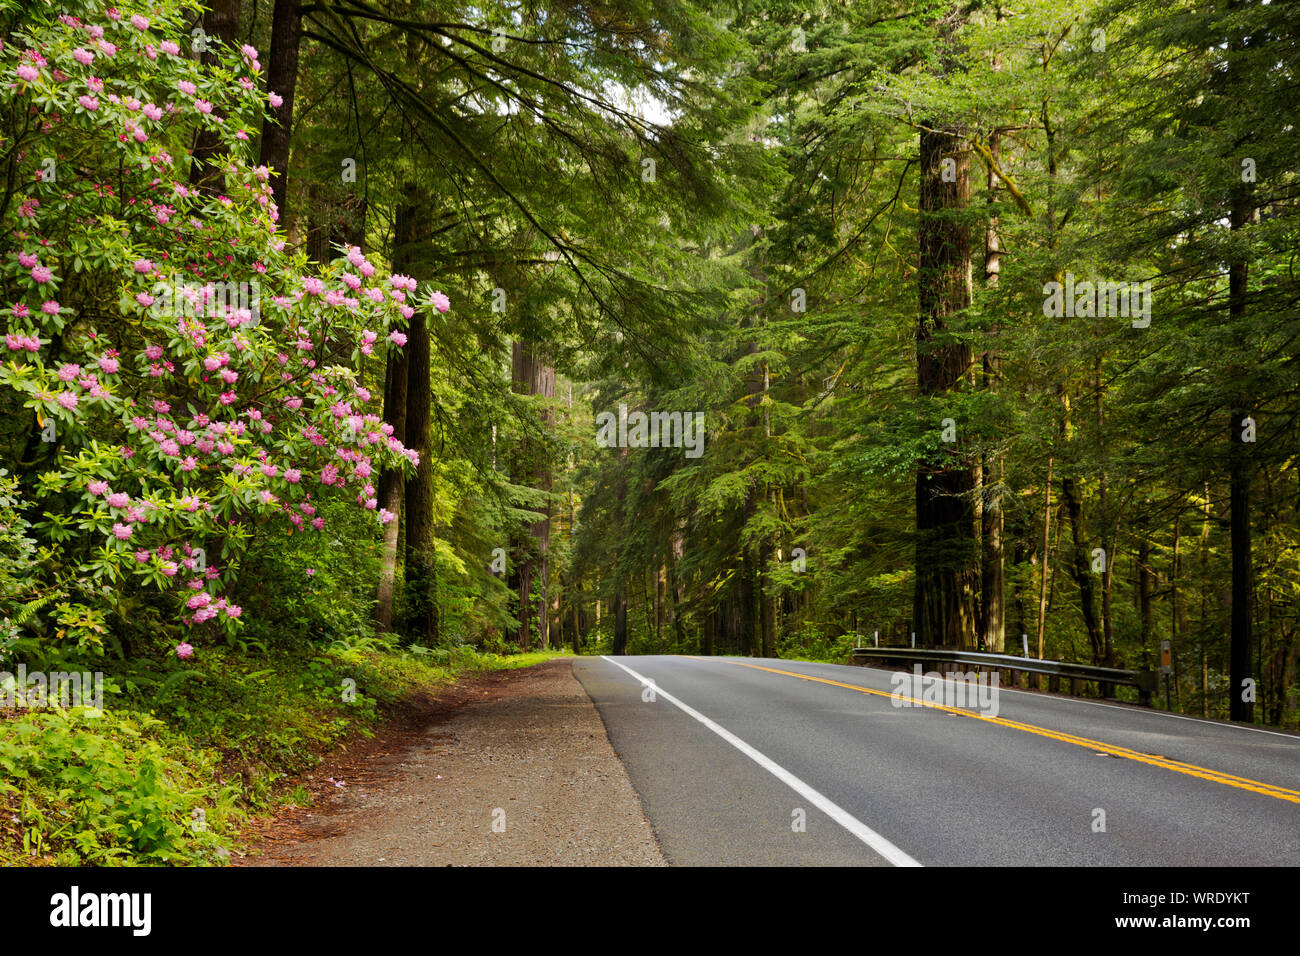 Kalifornien - Native Rhododendren blühen am Highway 199 im Jedediah Smith Redwoods State Park Abschnitt der Redwoods National- und Staatsparks. Stockfoto